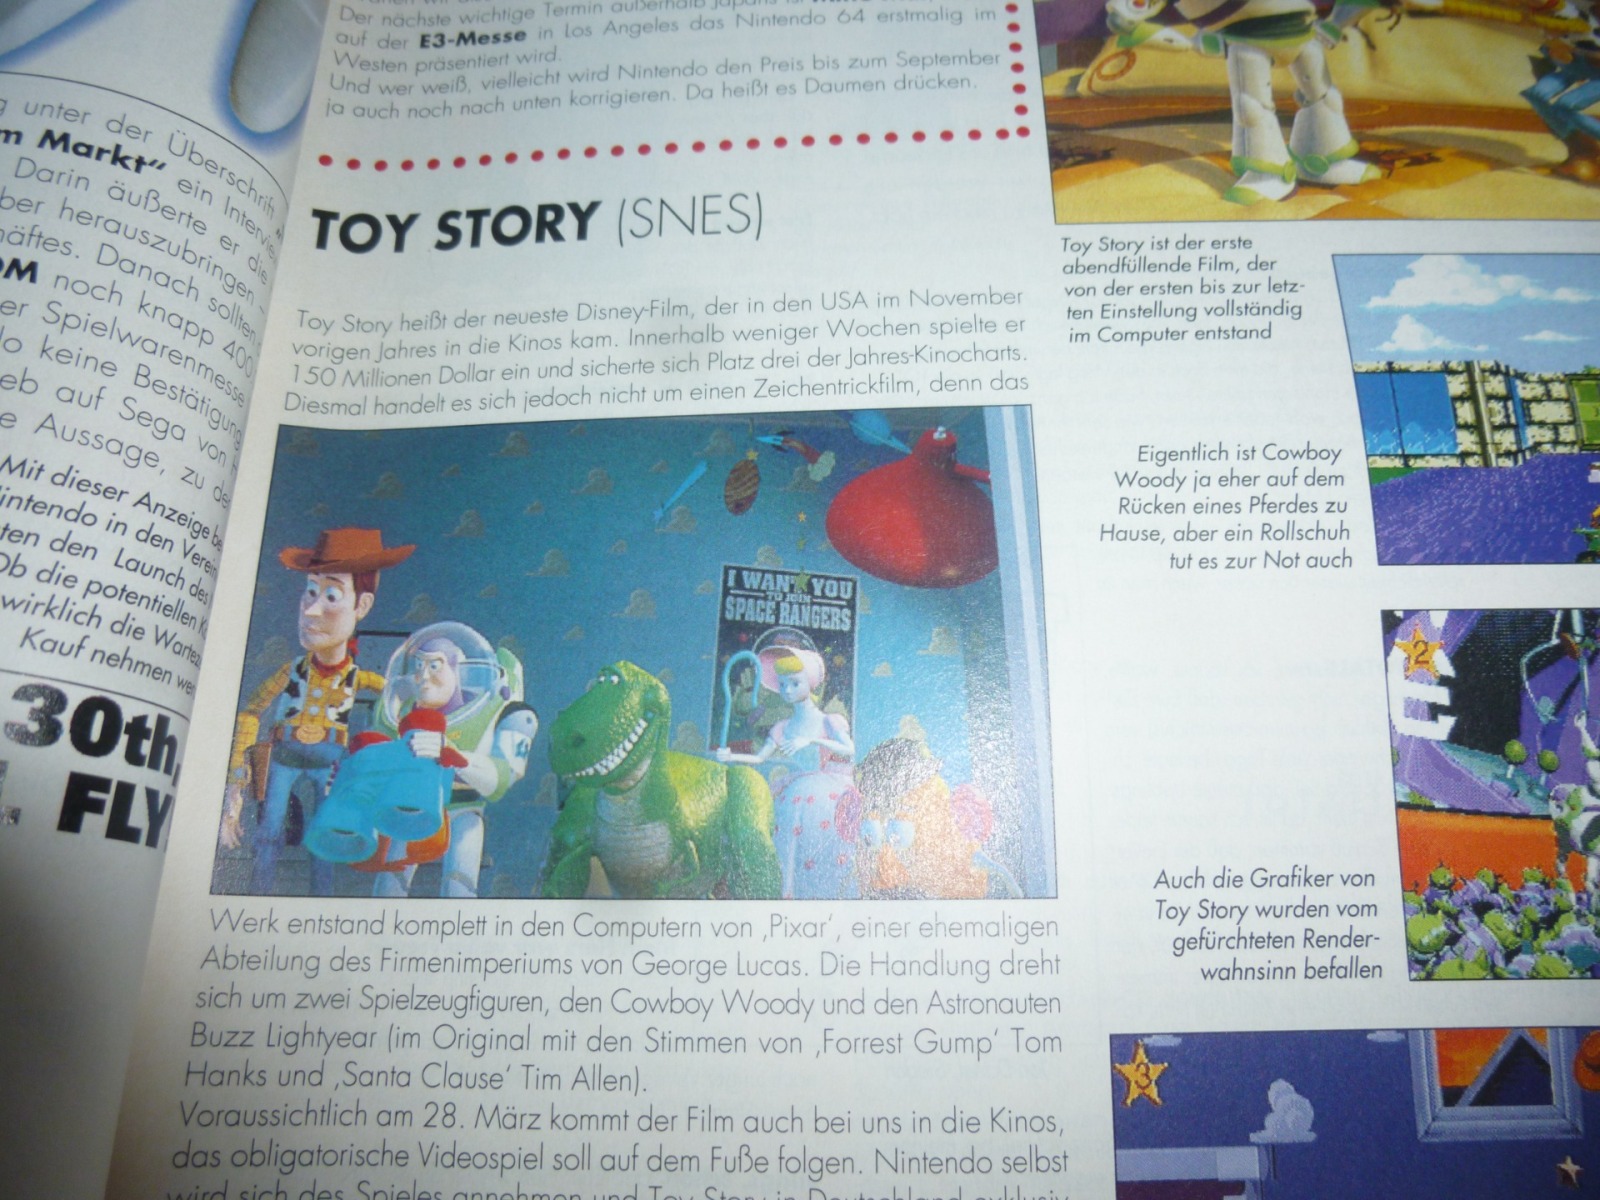 TOTAL Das unabhängige Magazin - 100% Nintendo - Ausgabe 3/96 1996 4